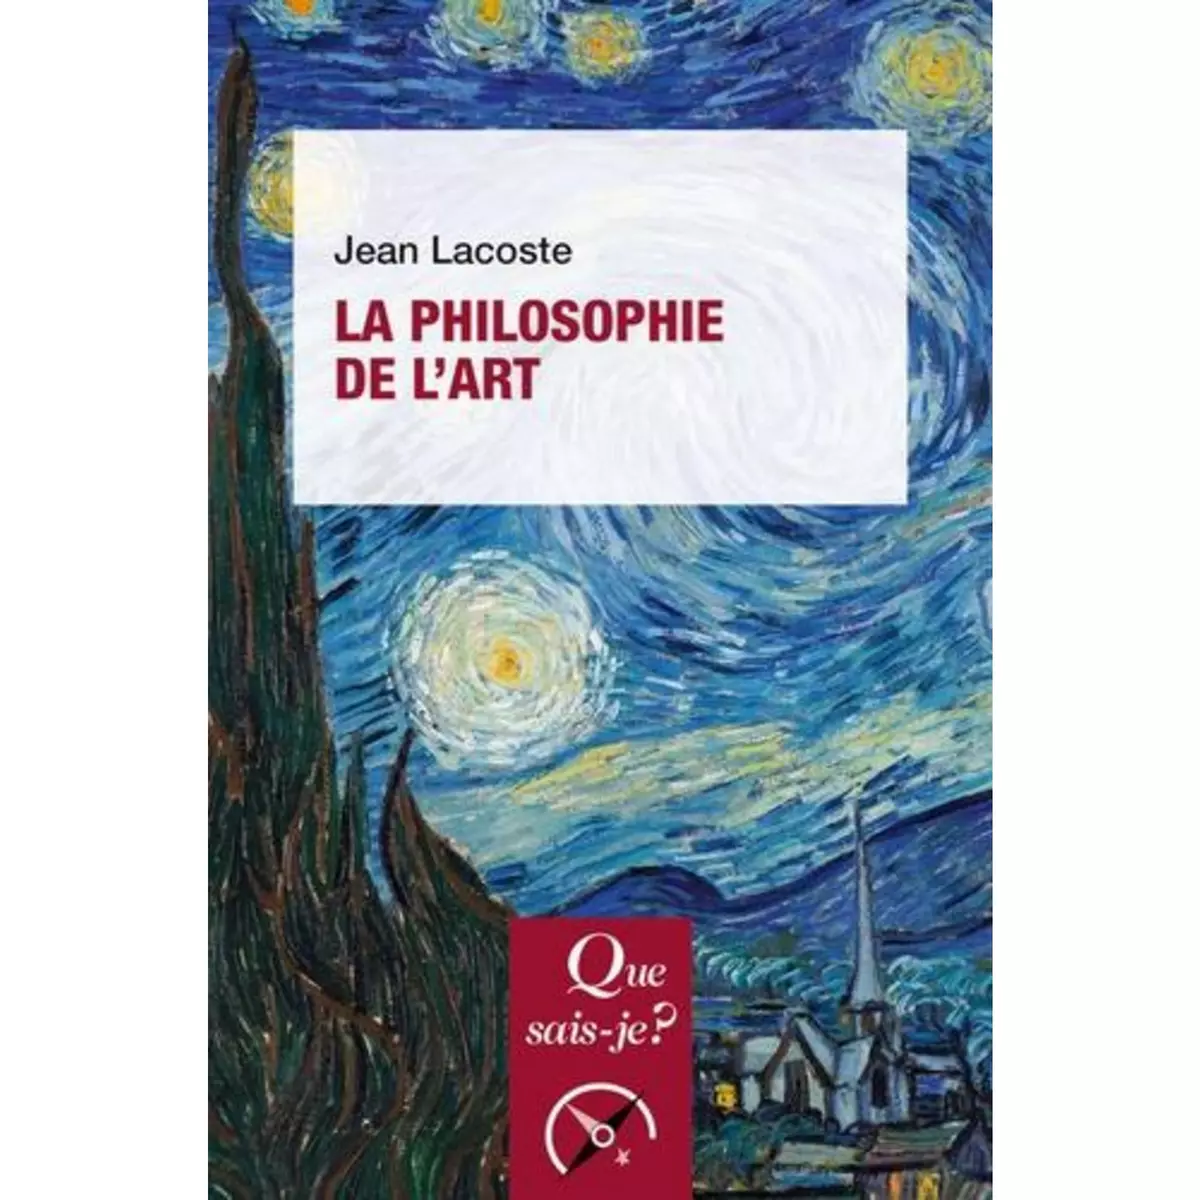  LA PHILOSOPHIE DE L'ART. 12E EDITION, Lacoste Jean